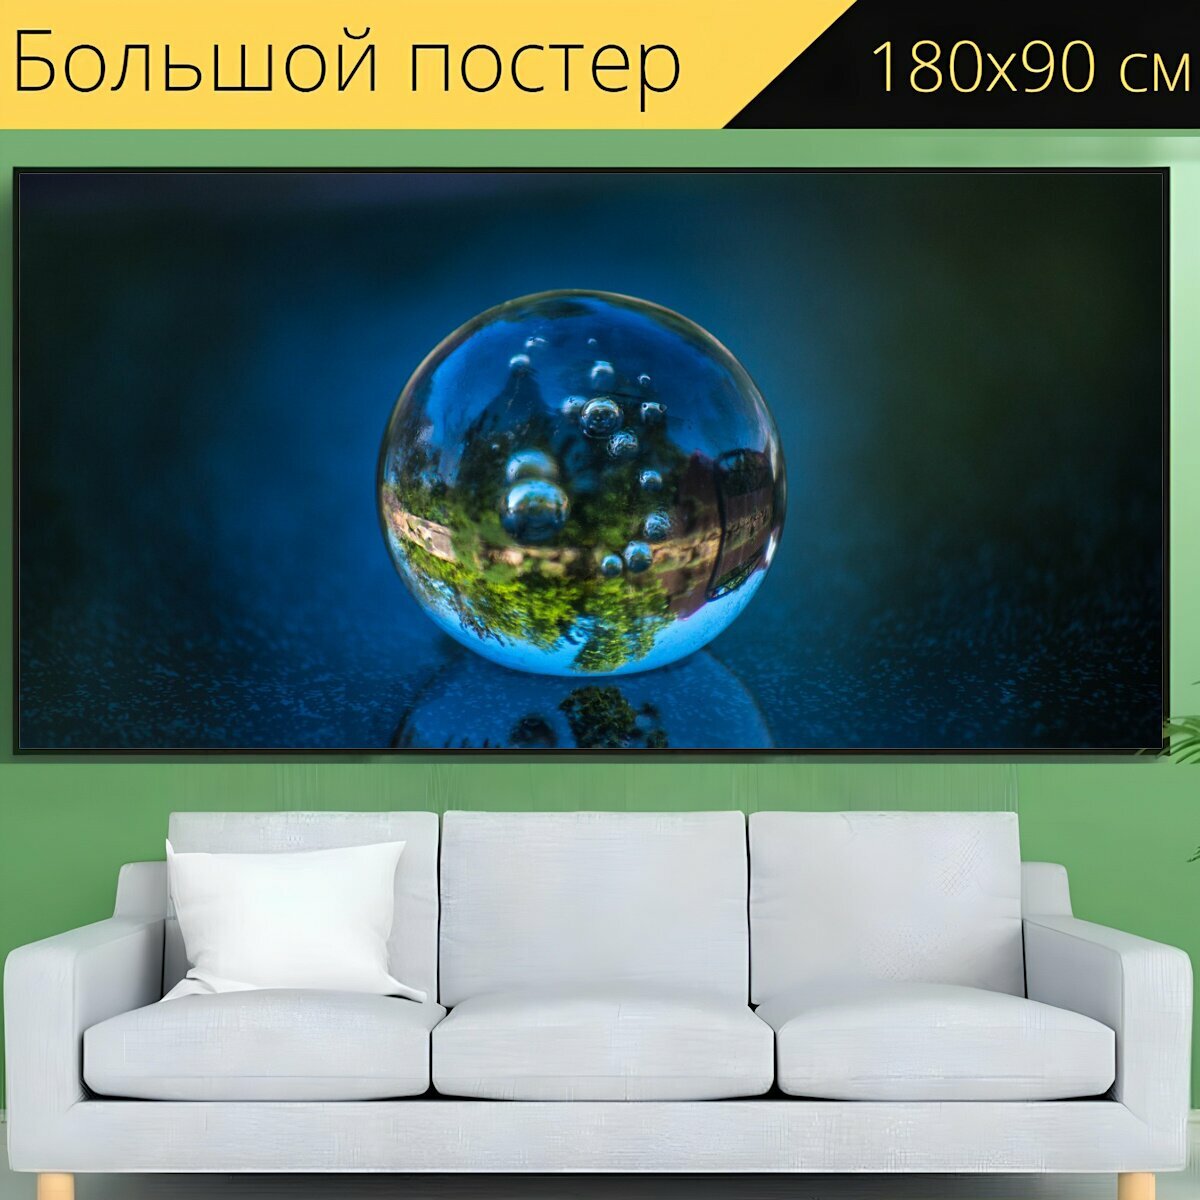 Большой постер "Мяч, отражение, зеркальное отображение" 180 x 90 см. для интерьера